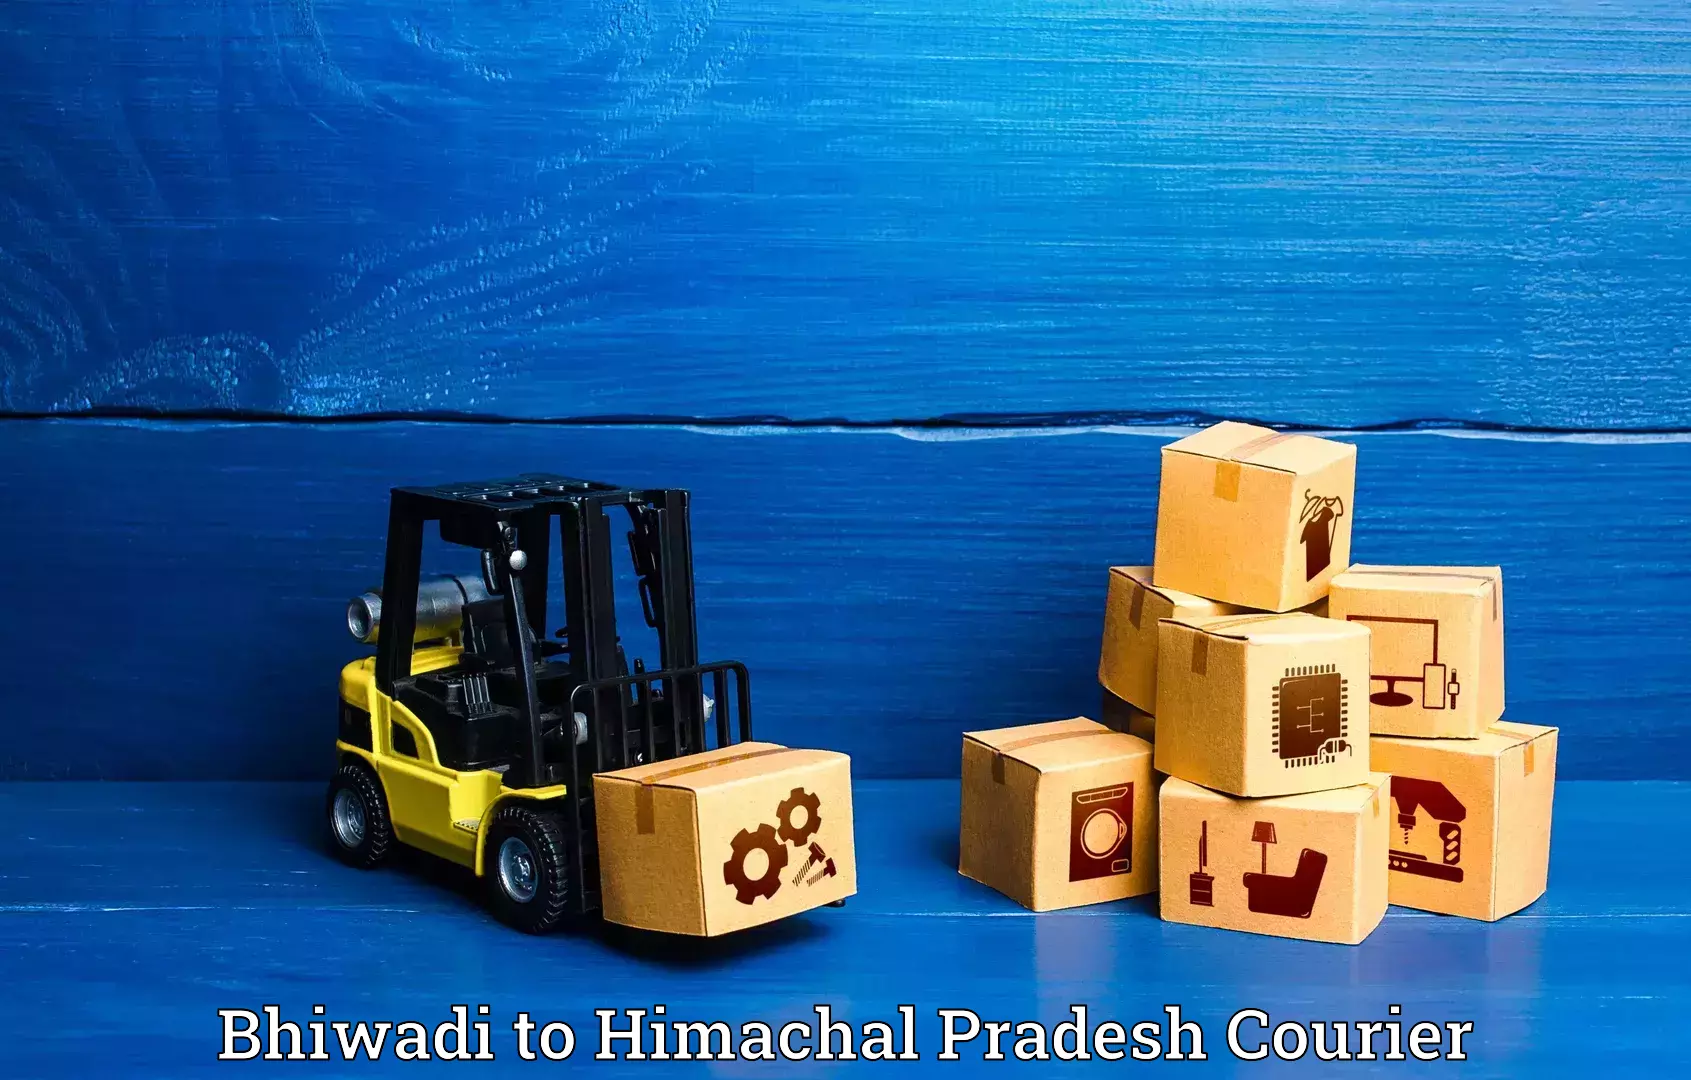 Baggage relocation service Bhiwadi to Una Himachal Pradesh